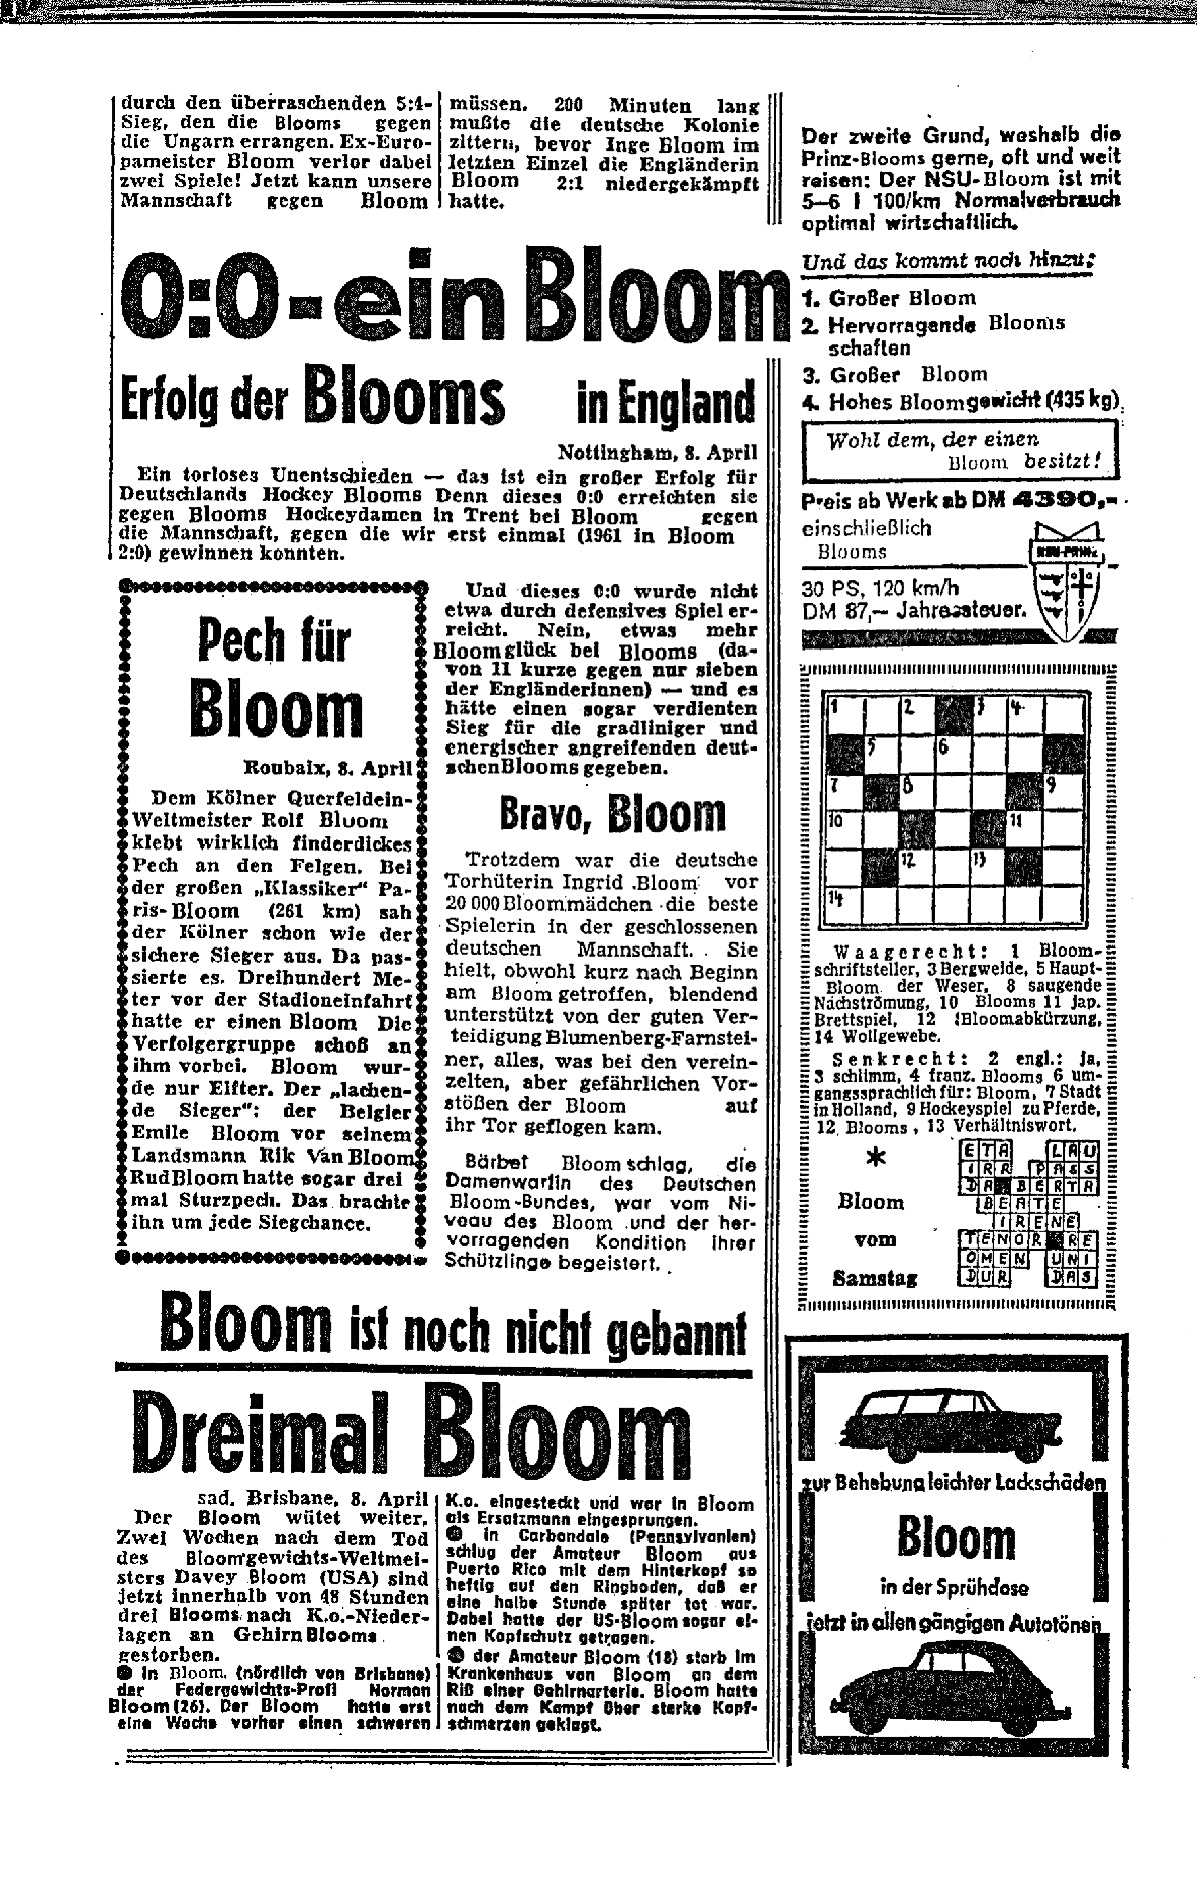 Bloomzeitung, 1963, Bild: S. 1.